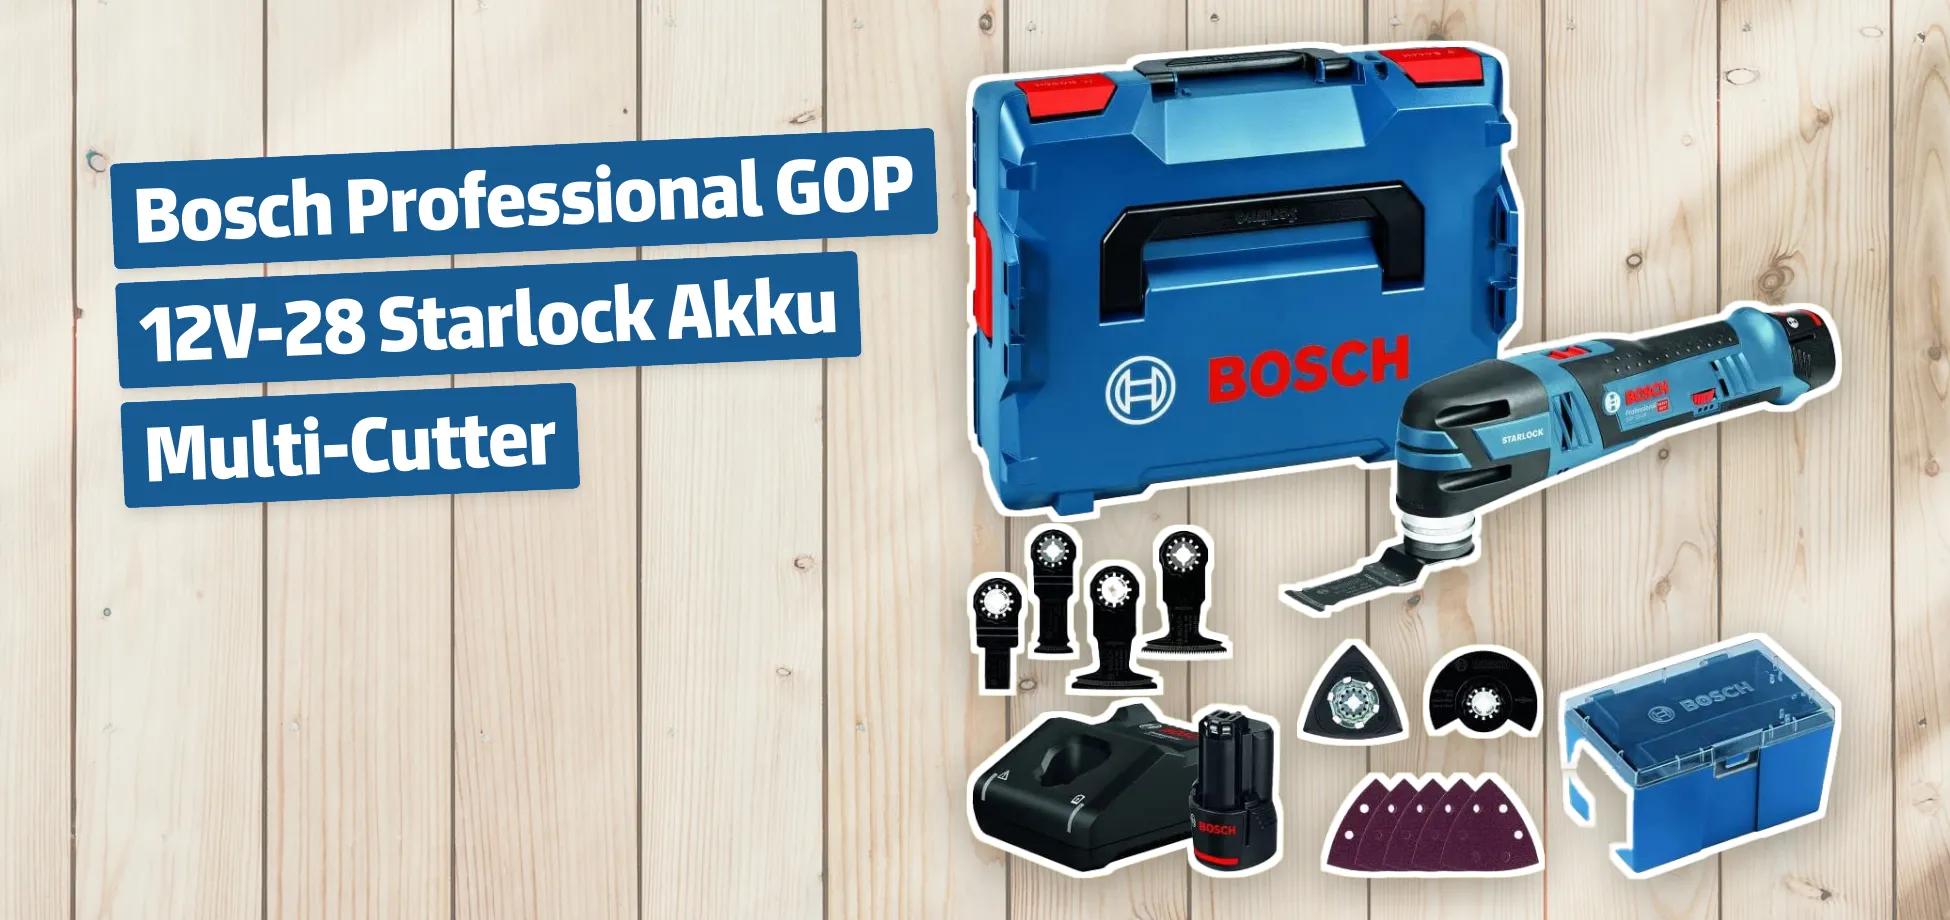 Bosch Professional GOP 12V-28 Starlock Akku Multi-Cutter